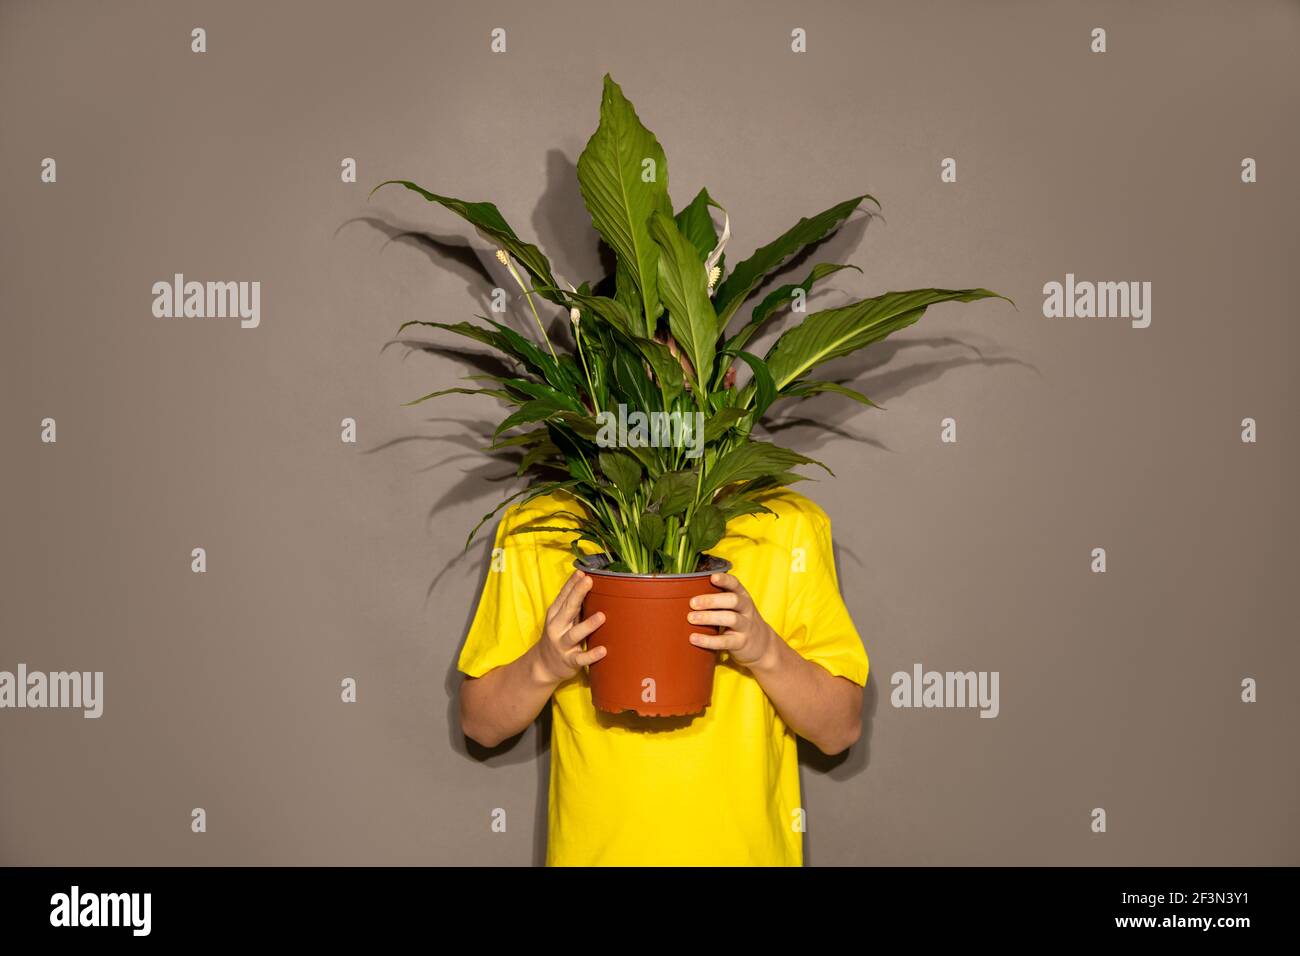 Personnes méconnaissables garçon adolescent jeune homme caché derrière le pot avec la fleur de maison avec de grandes feuilles vertes. Face cachée Banque D'Images